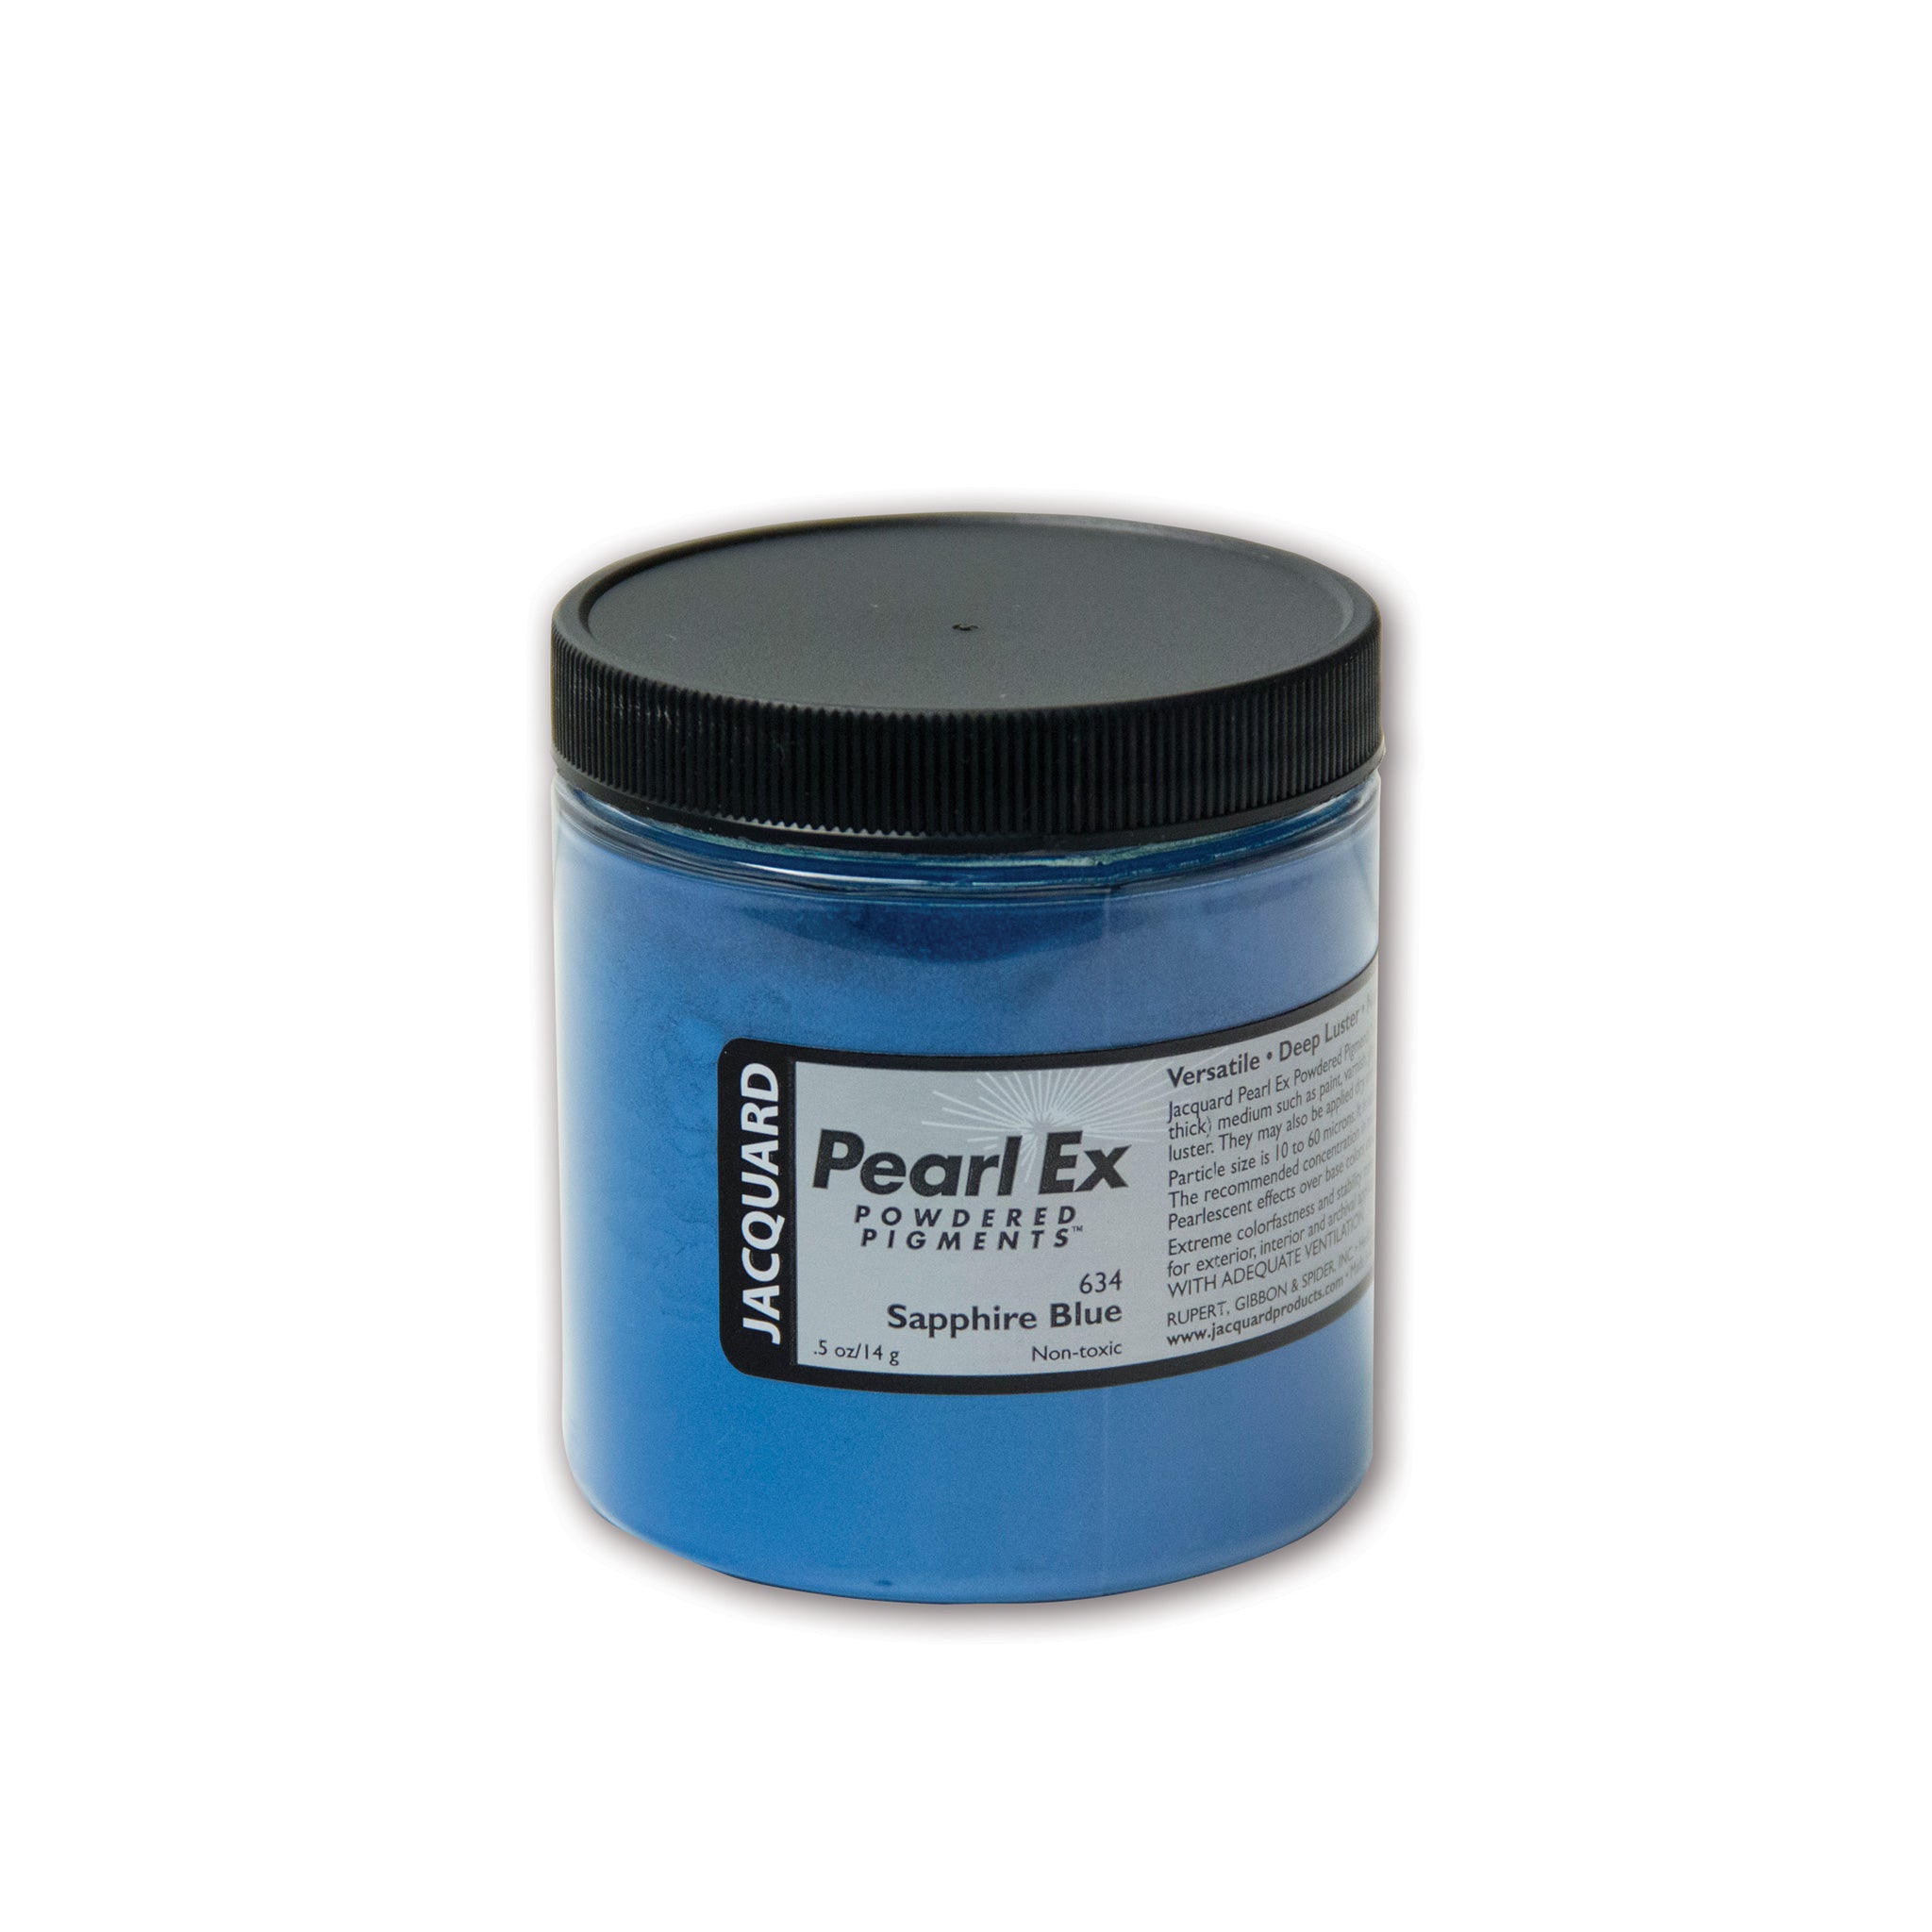 Pearl Ex Powdered Pigments by Jacquard – Del Bello's Designs